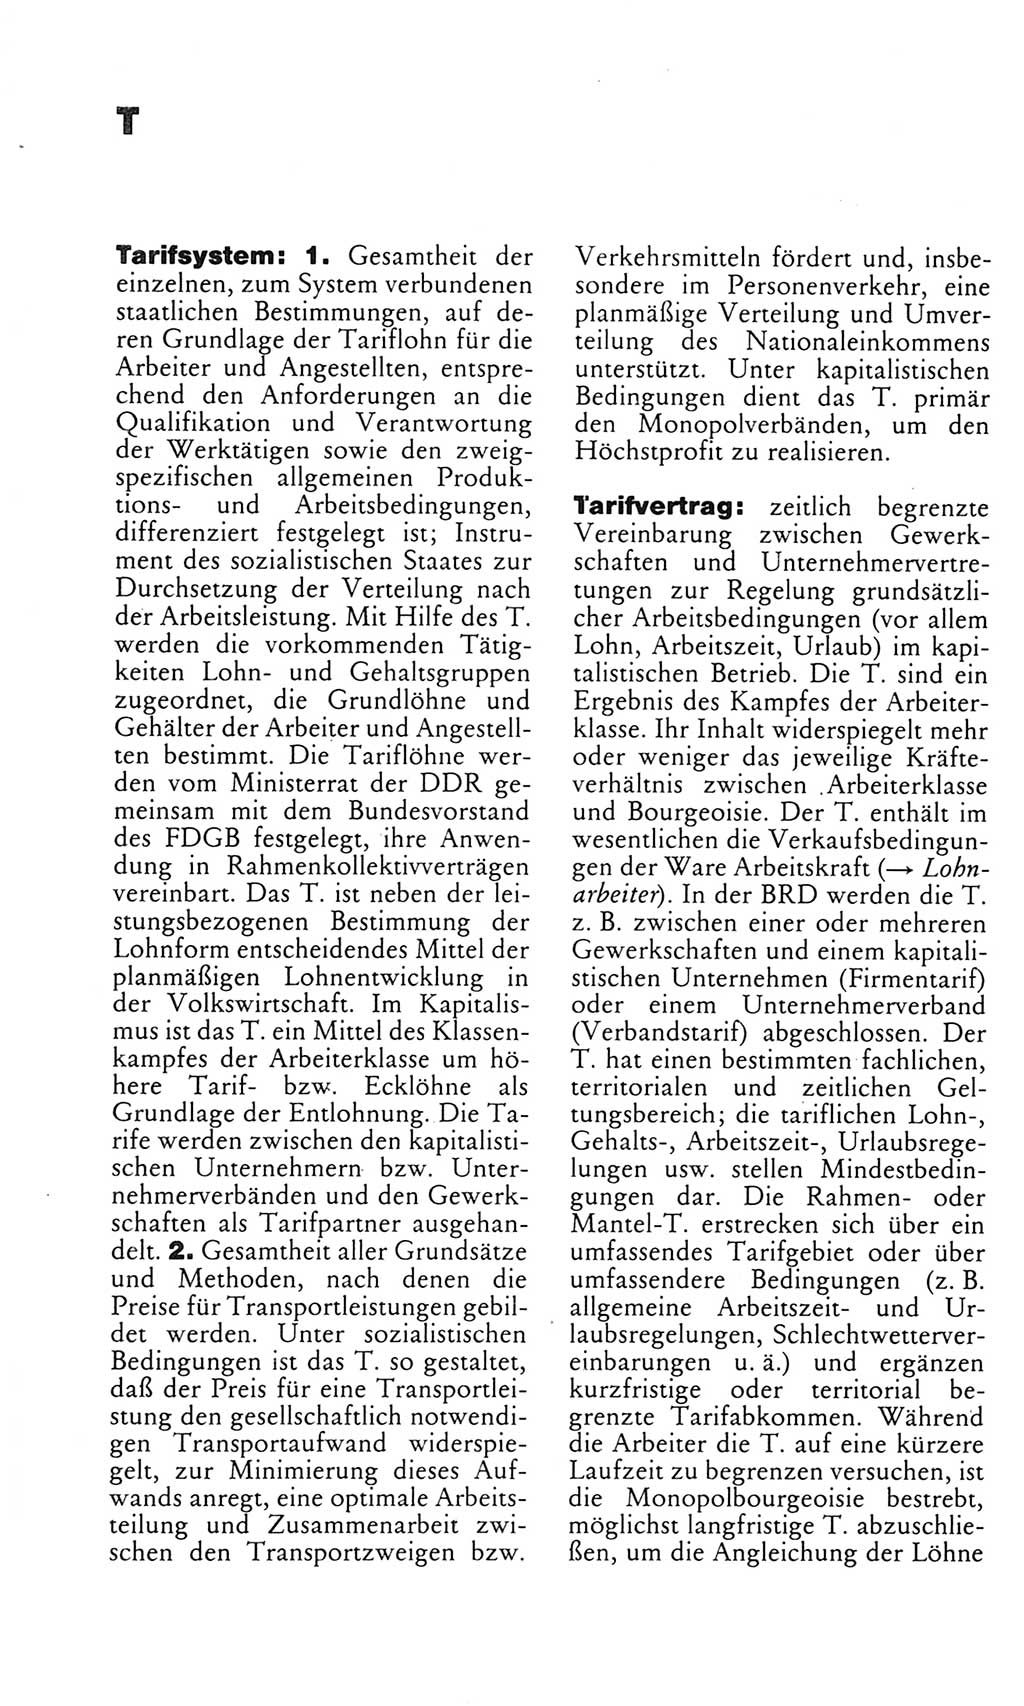 Kleines politisches Wörterbuch [Deutsche Demokratische Republik (DDR)] 1983, Seite 946 (Kl. pol. Wb. DDR 1983, S. 946)